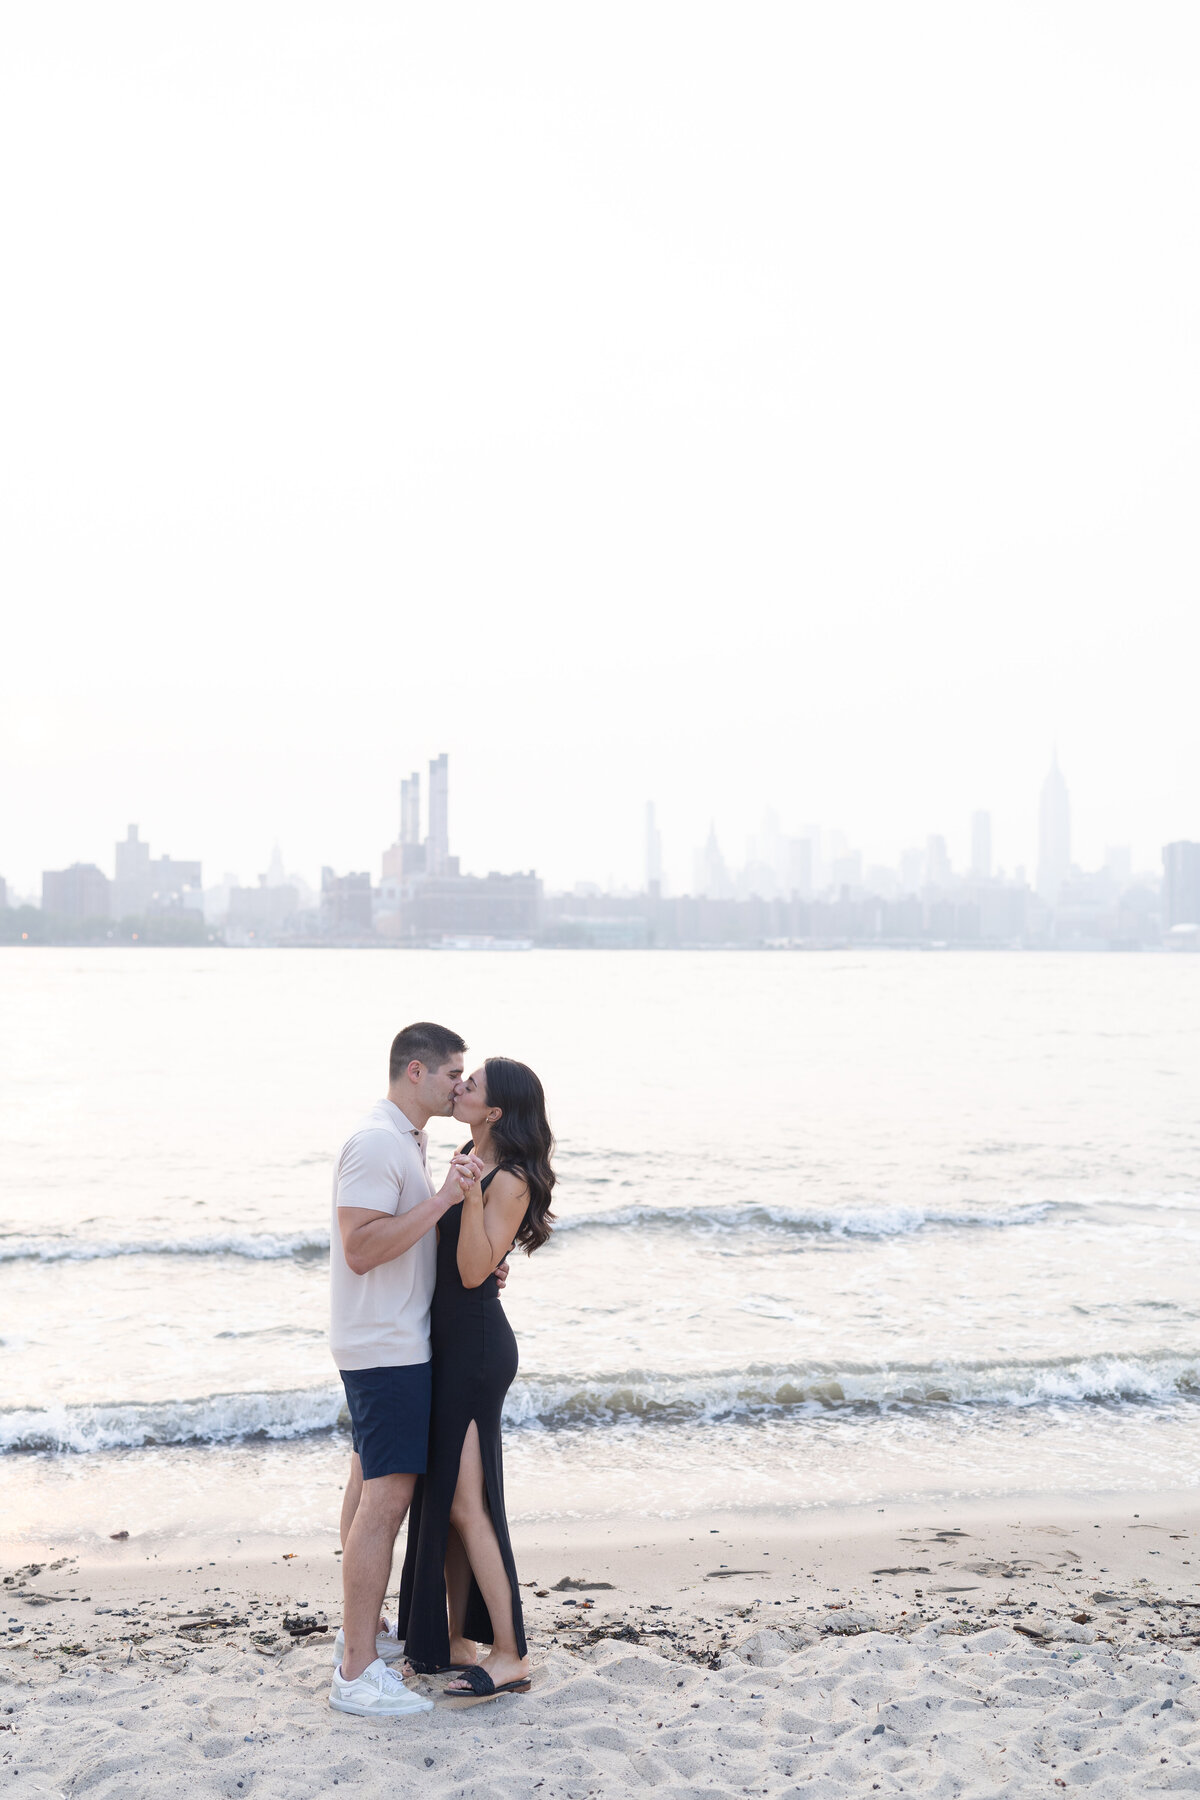 Amanda Gomez Photography - East Coast Proposal & Engagement Photographer - 27